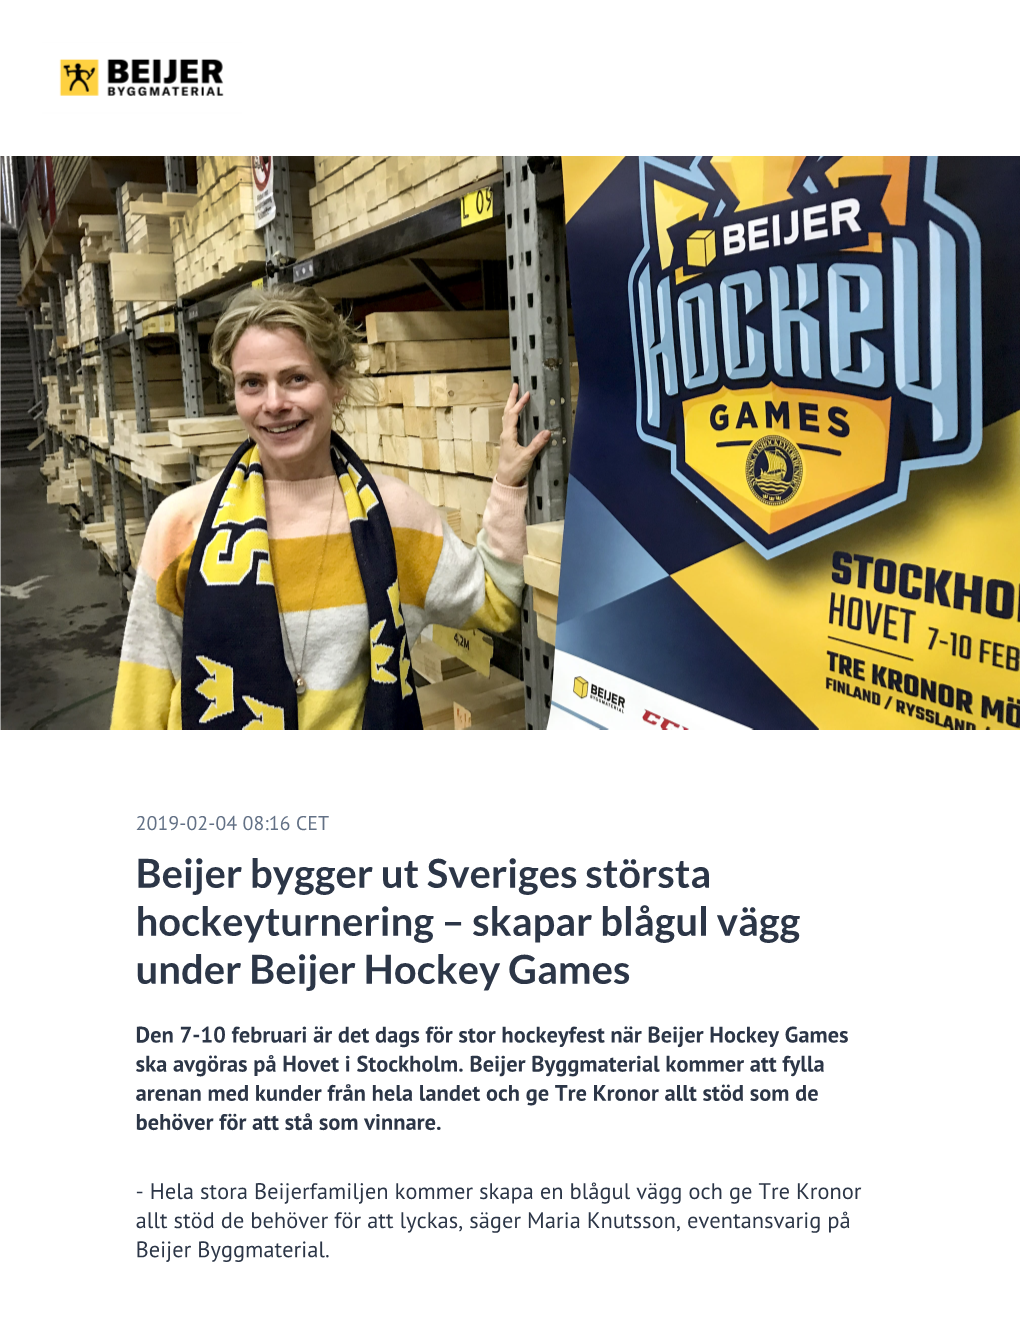 Skapar Blågul Vägg Under Beijer Hockey Games